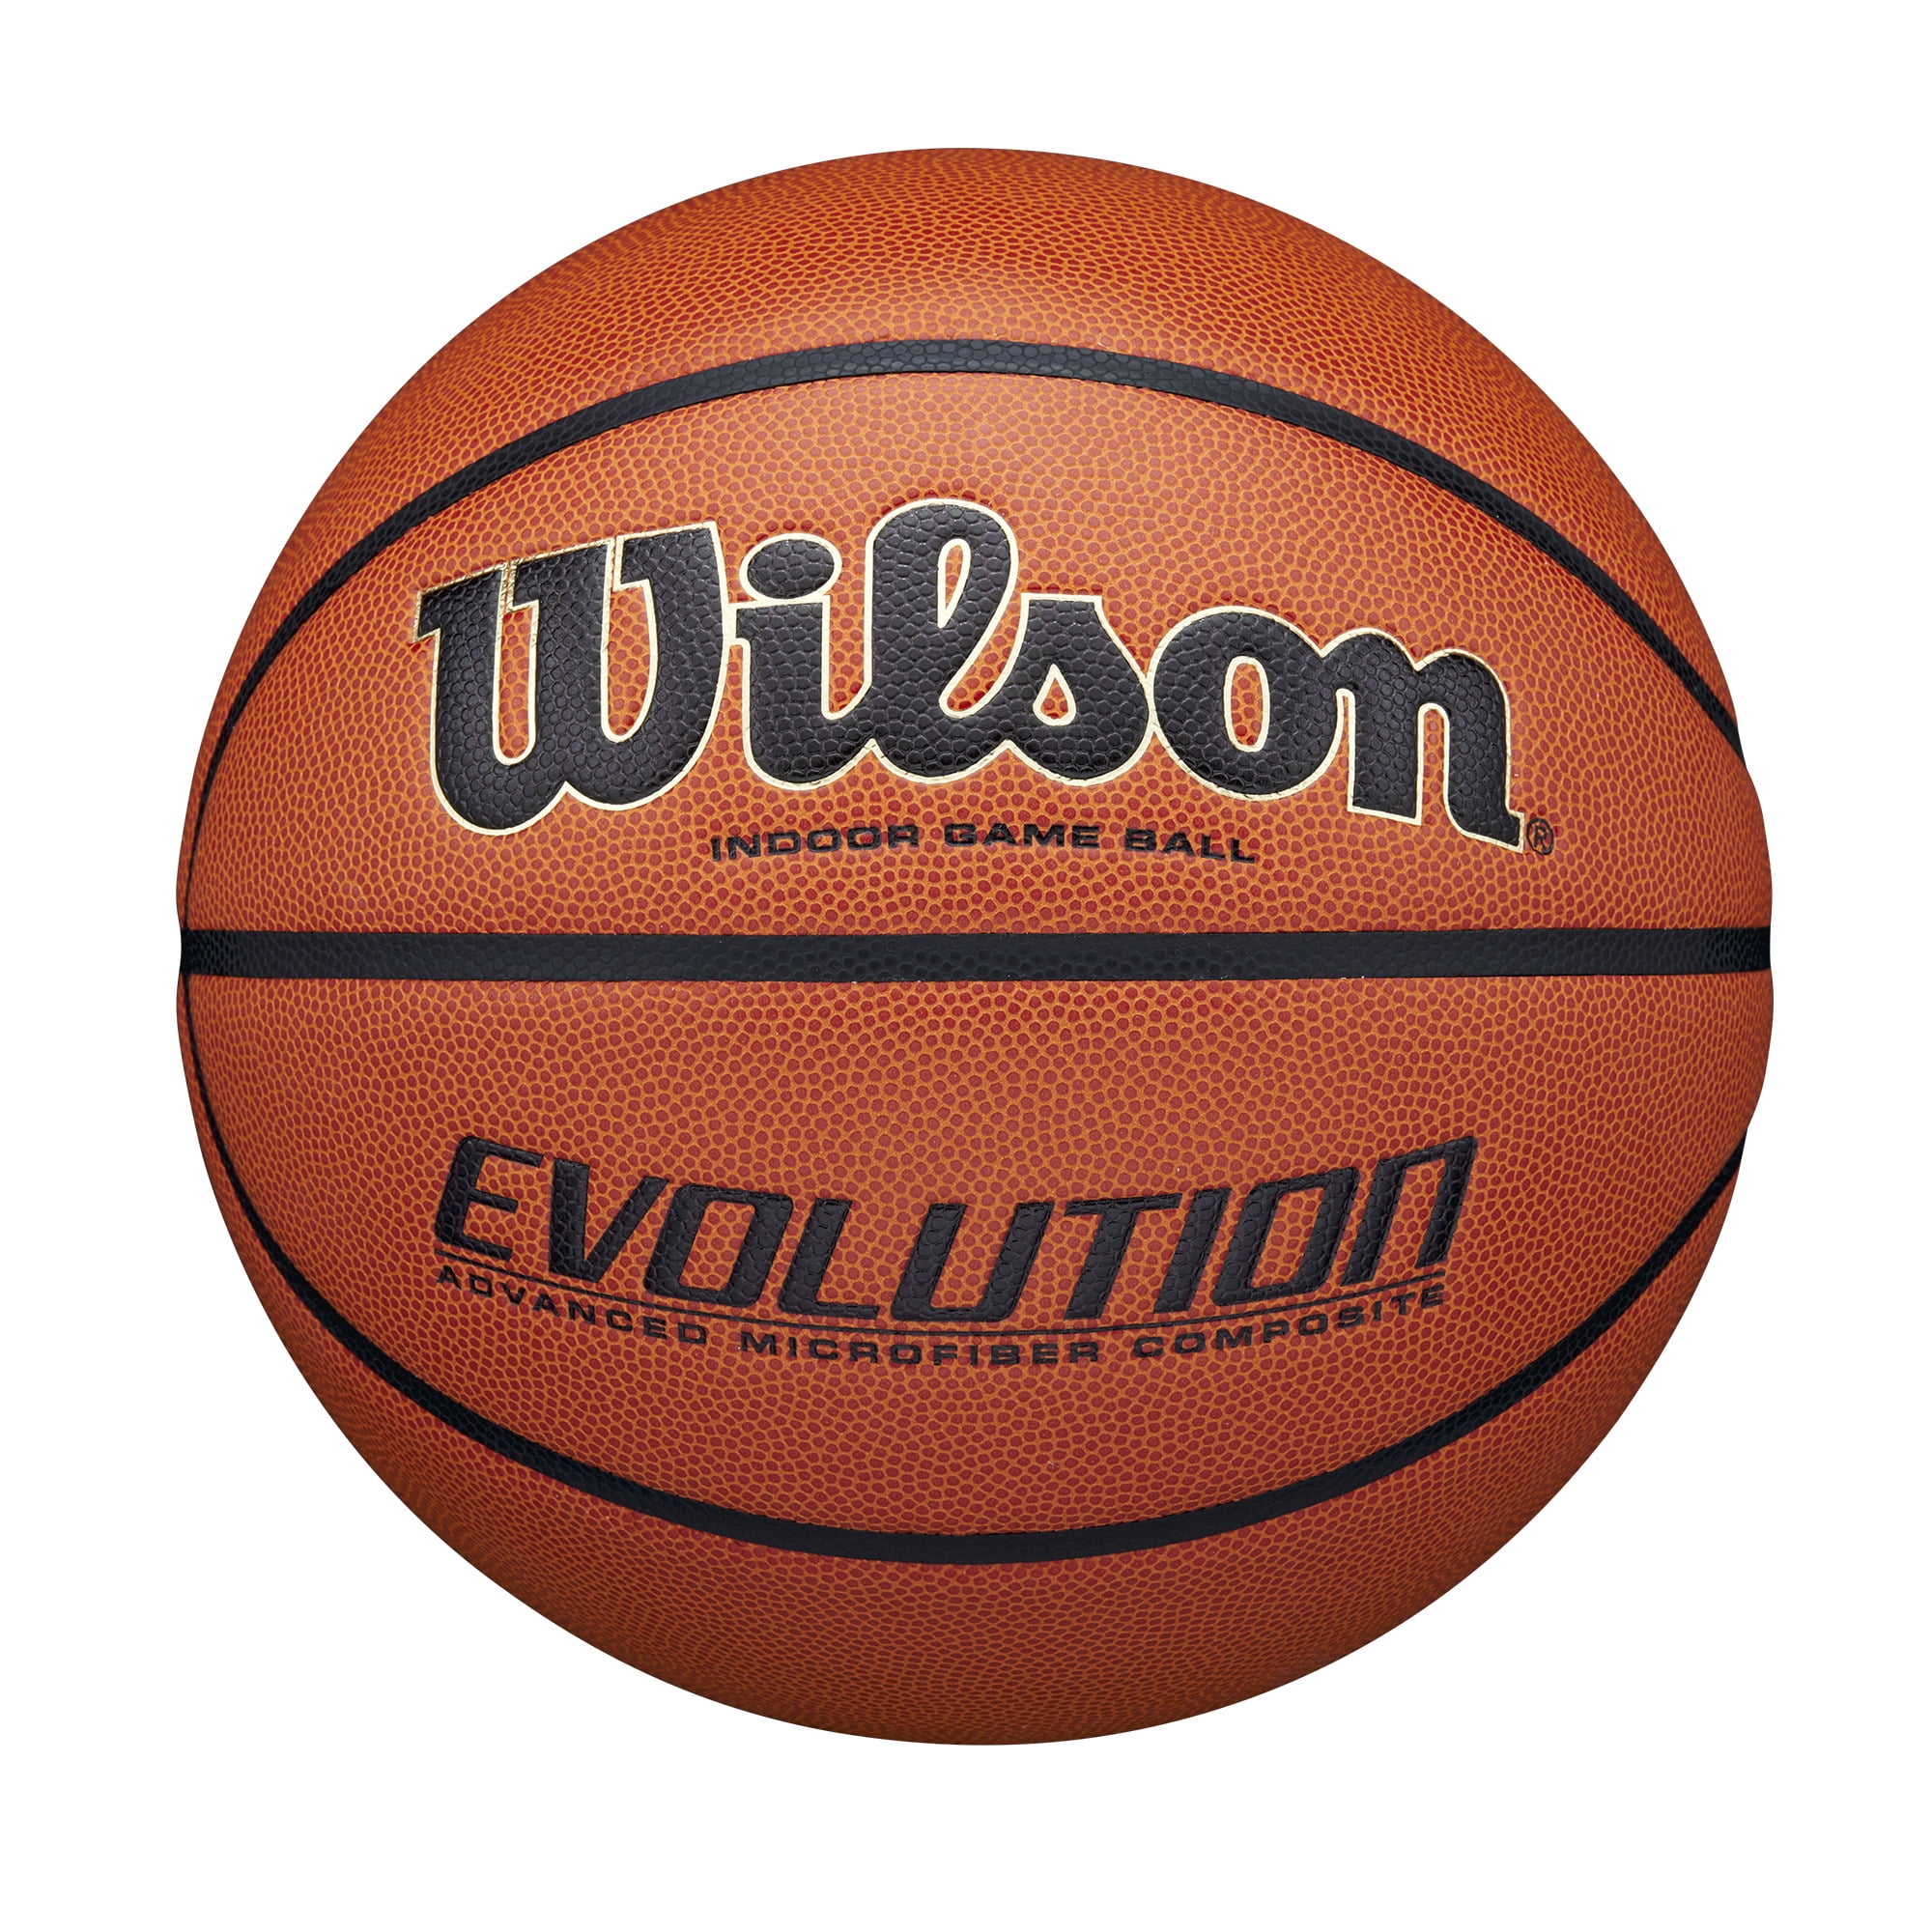 WILSON NCAA REPLICA GAME BASKETBALL Size 7 